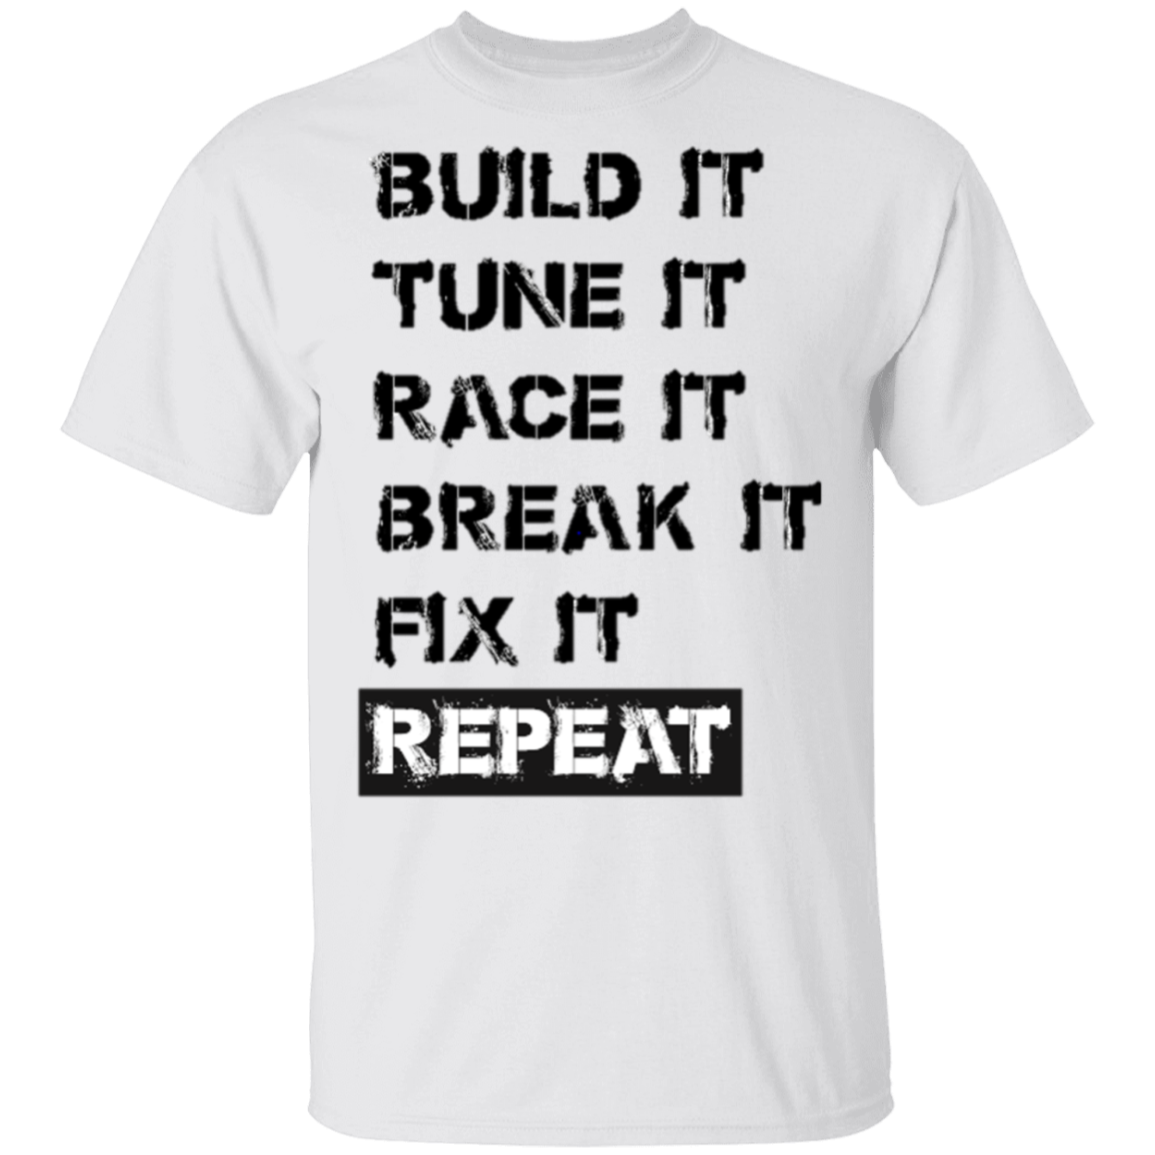 RACE BREAK REPEAT